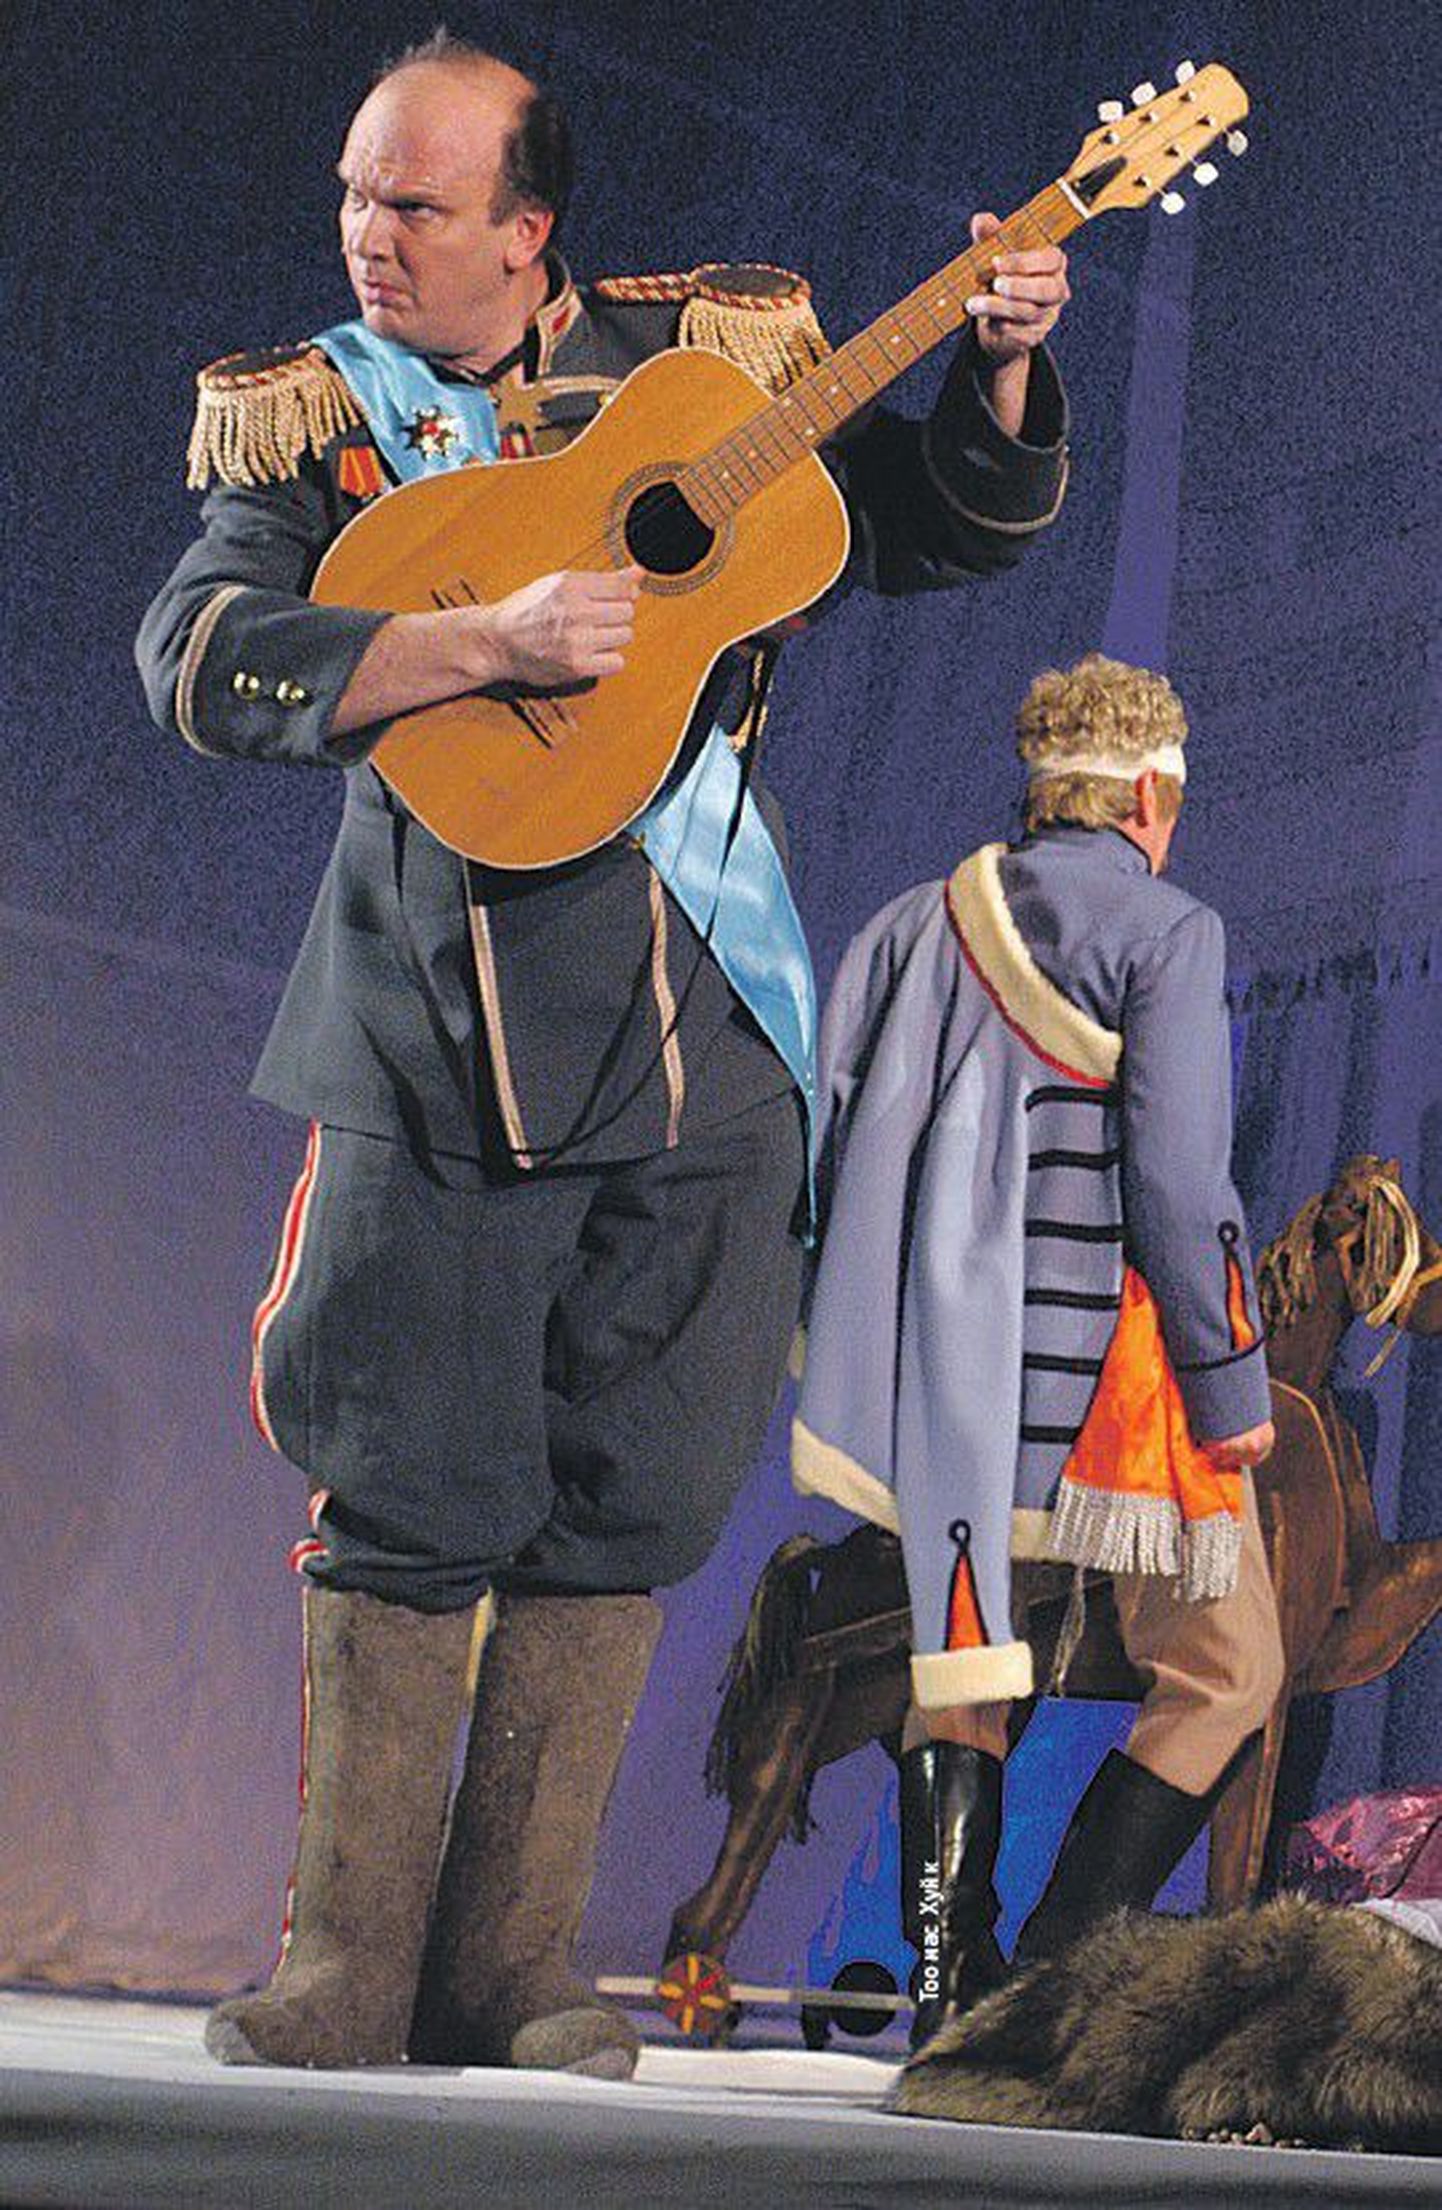 27 и 28 ноября музыкальным спектаклем «Амуры в снегу» по пьесе Фонвизина «Бригадир», в котором Олег Рогачев играет главную роль — Бригадира, артист отметит свой юбилей.